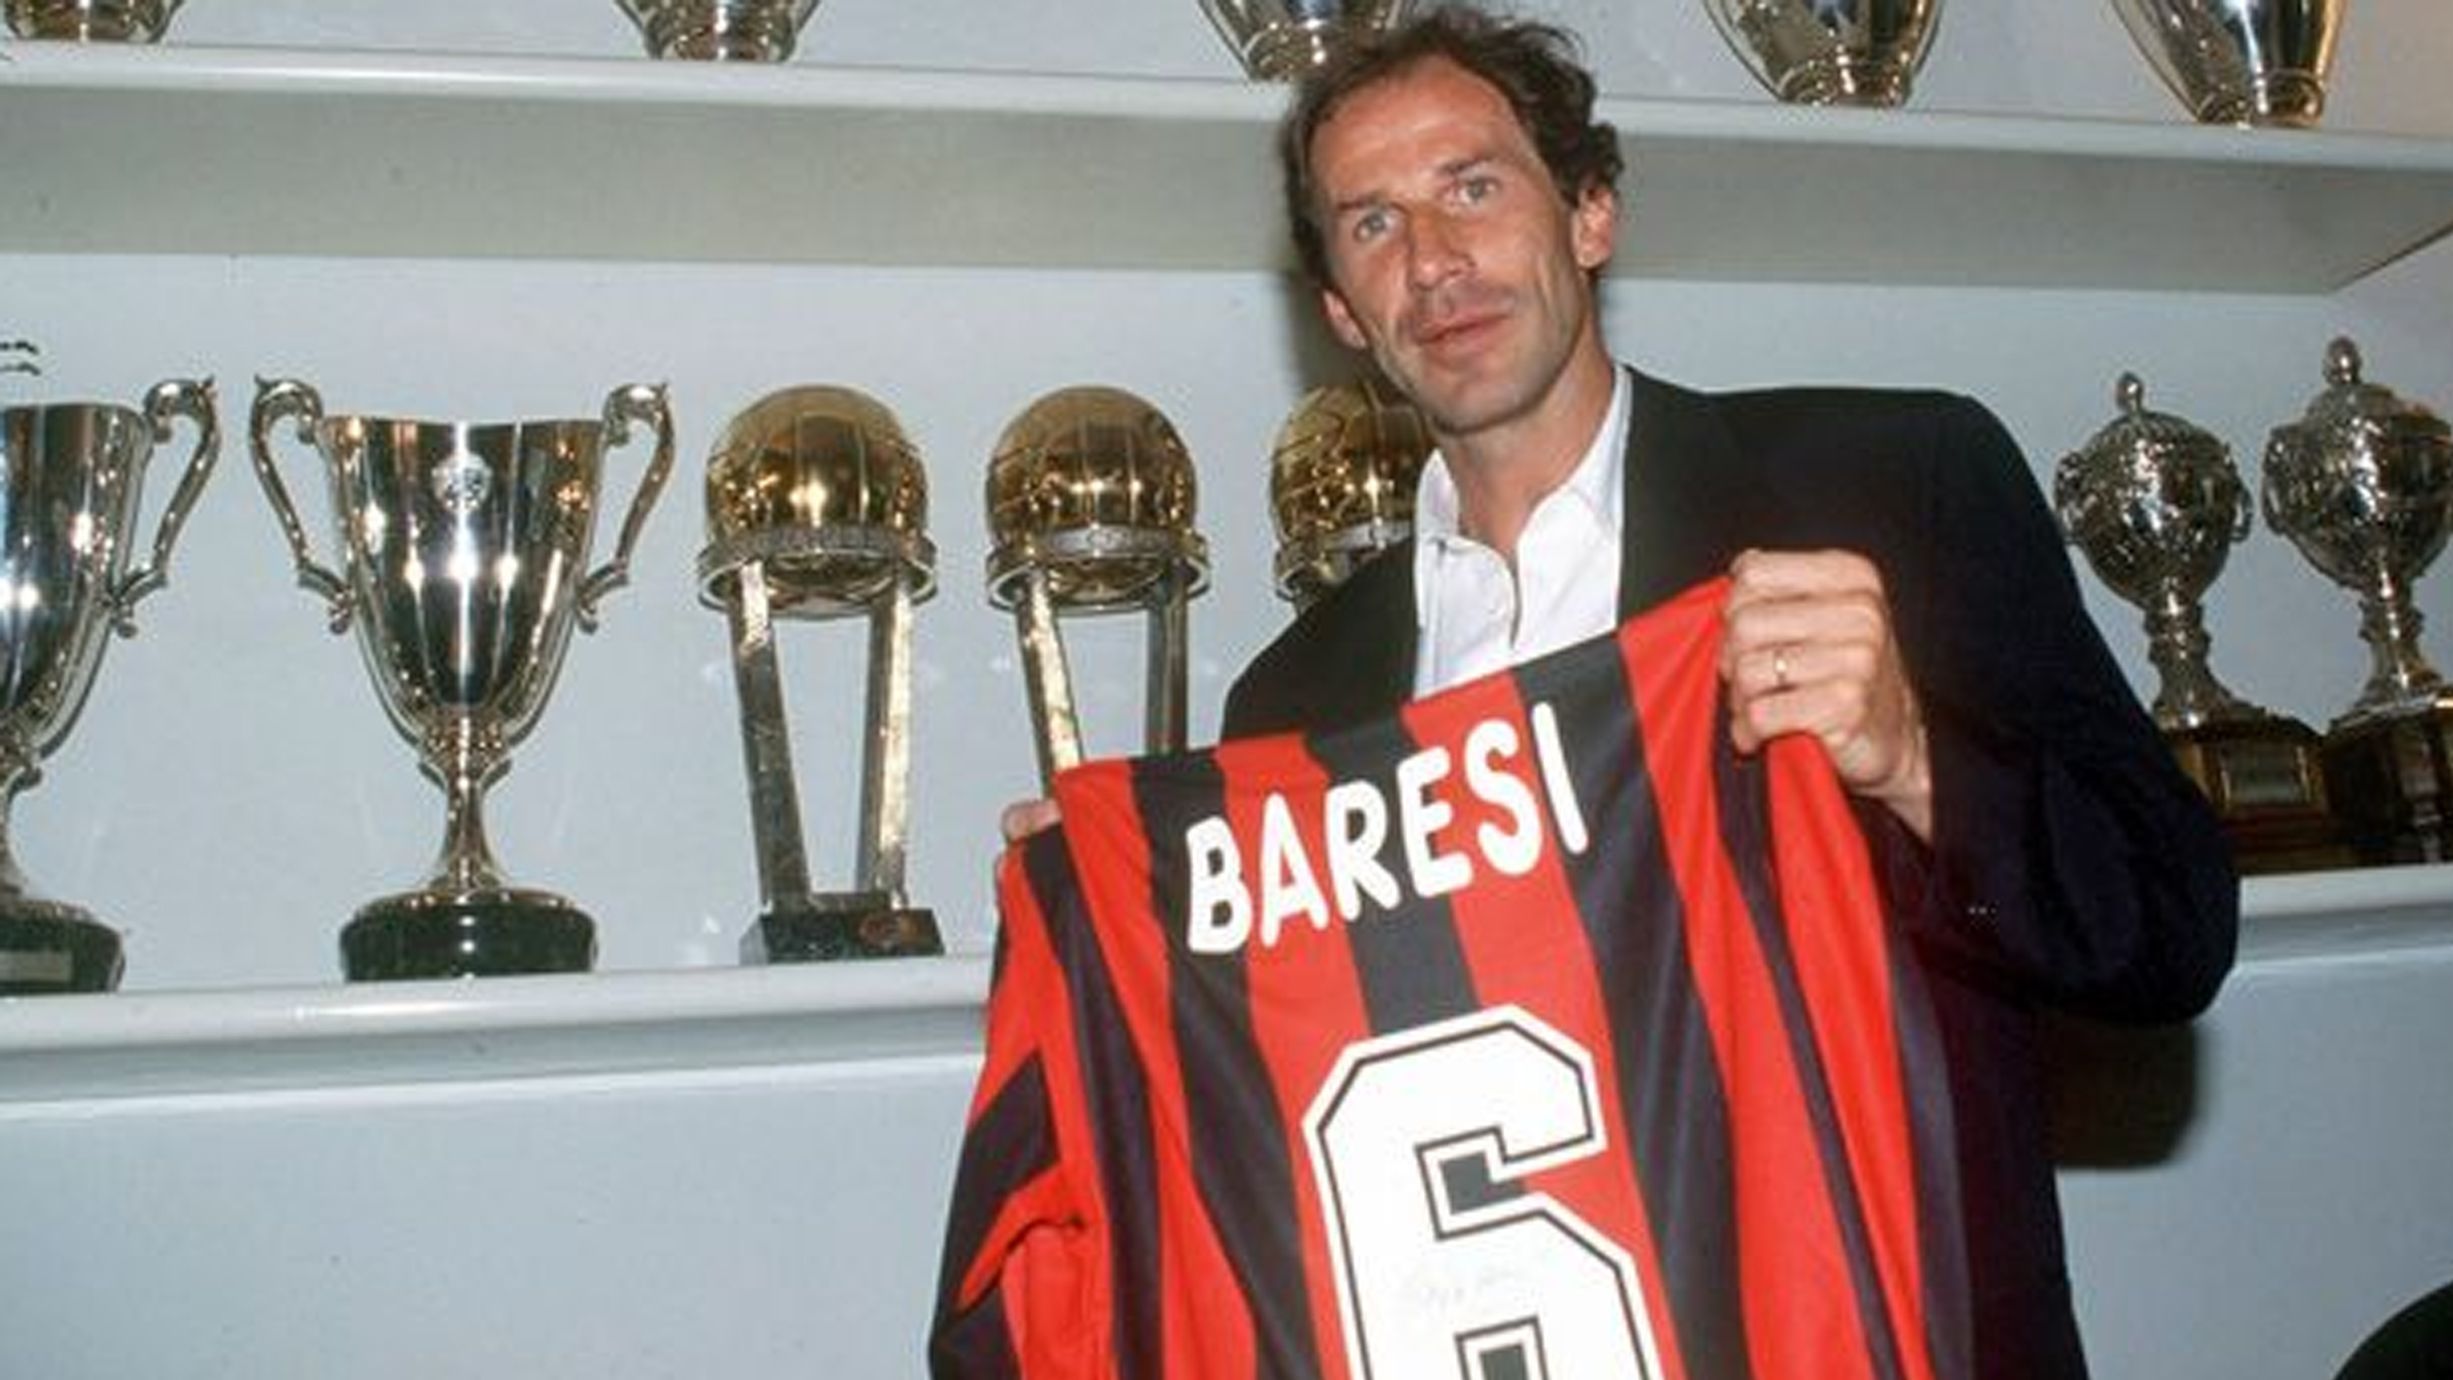 
                <strong>Franco Baresi (AC Milan)</strong><br>
                Neben Maldini gibt es bei den Mailändern einen zweiten Defensivspieler, der schon zu Lebzeiten absolut als Legende bezeichnet werden darf. Baresi bestritt zwischen 1978 und 1997 532 Pflichtspiele und wurde später zum "besten Libero aller Zeiten" geadelt. Die Nummer 6, die er sowohl in Klub als auch Nationalmannschaft trug, ist bei Milan seitdem tabu für andere Profis. Kurios: Baresis Bruder Giuseppe spielte fast 400 Mal für den Stadtrivalen Inter Mailand.
              